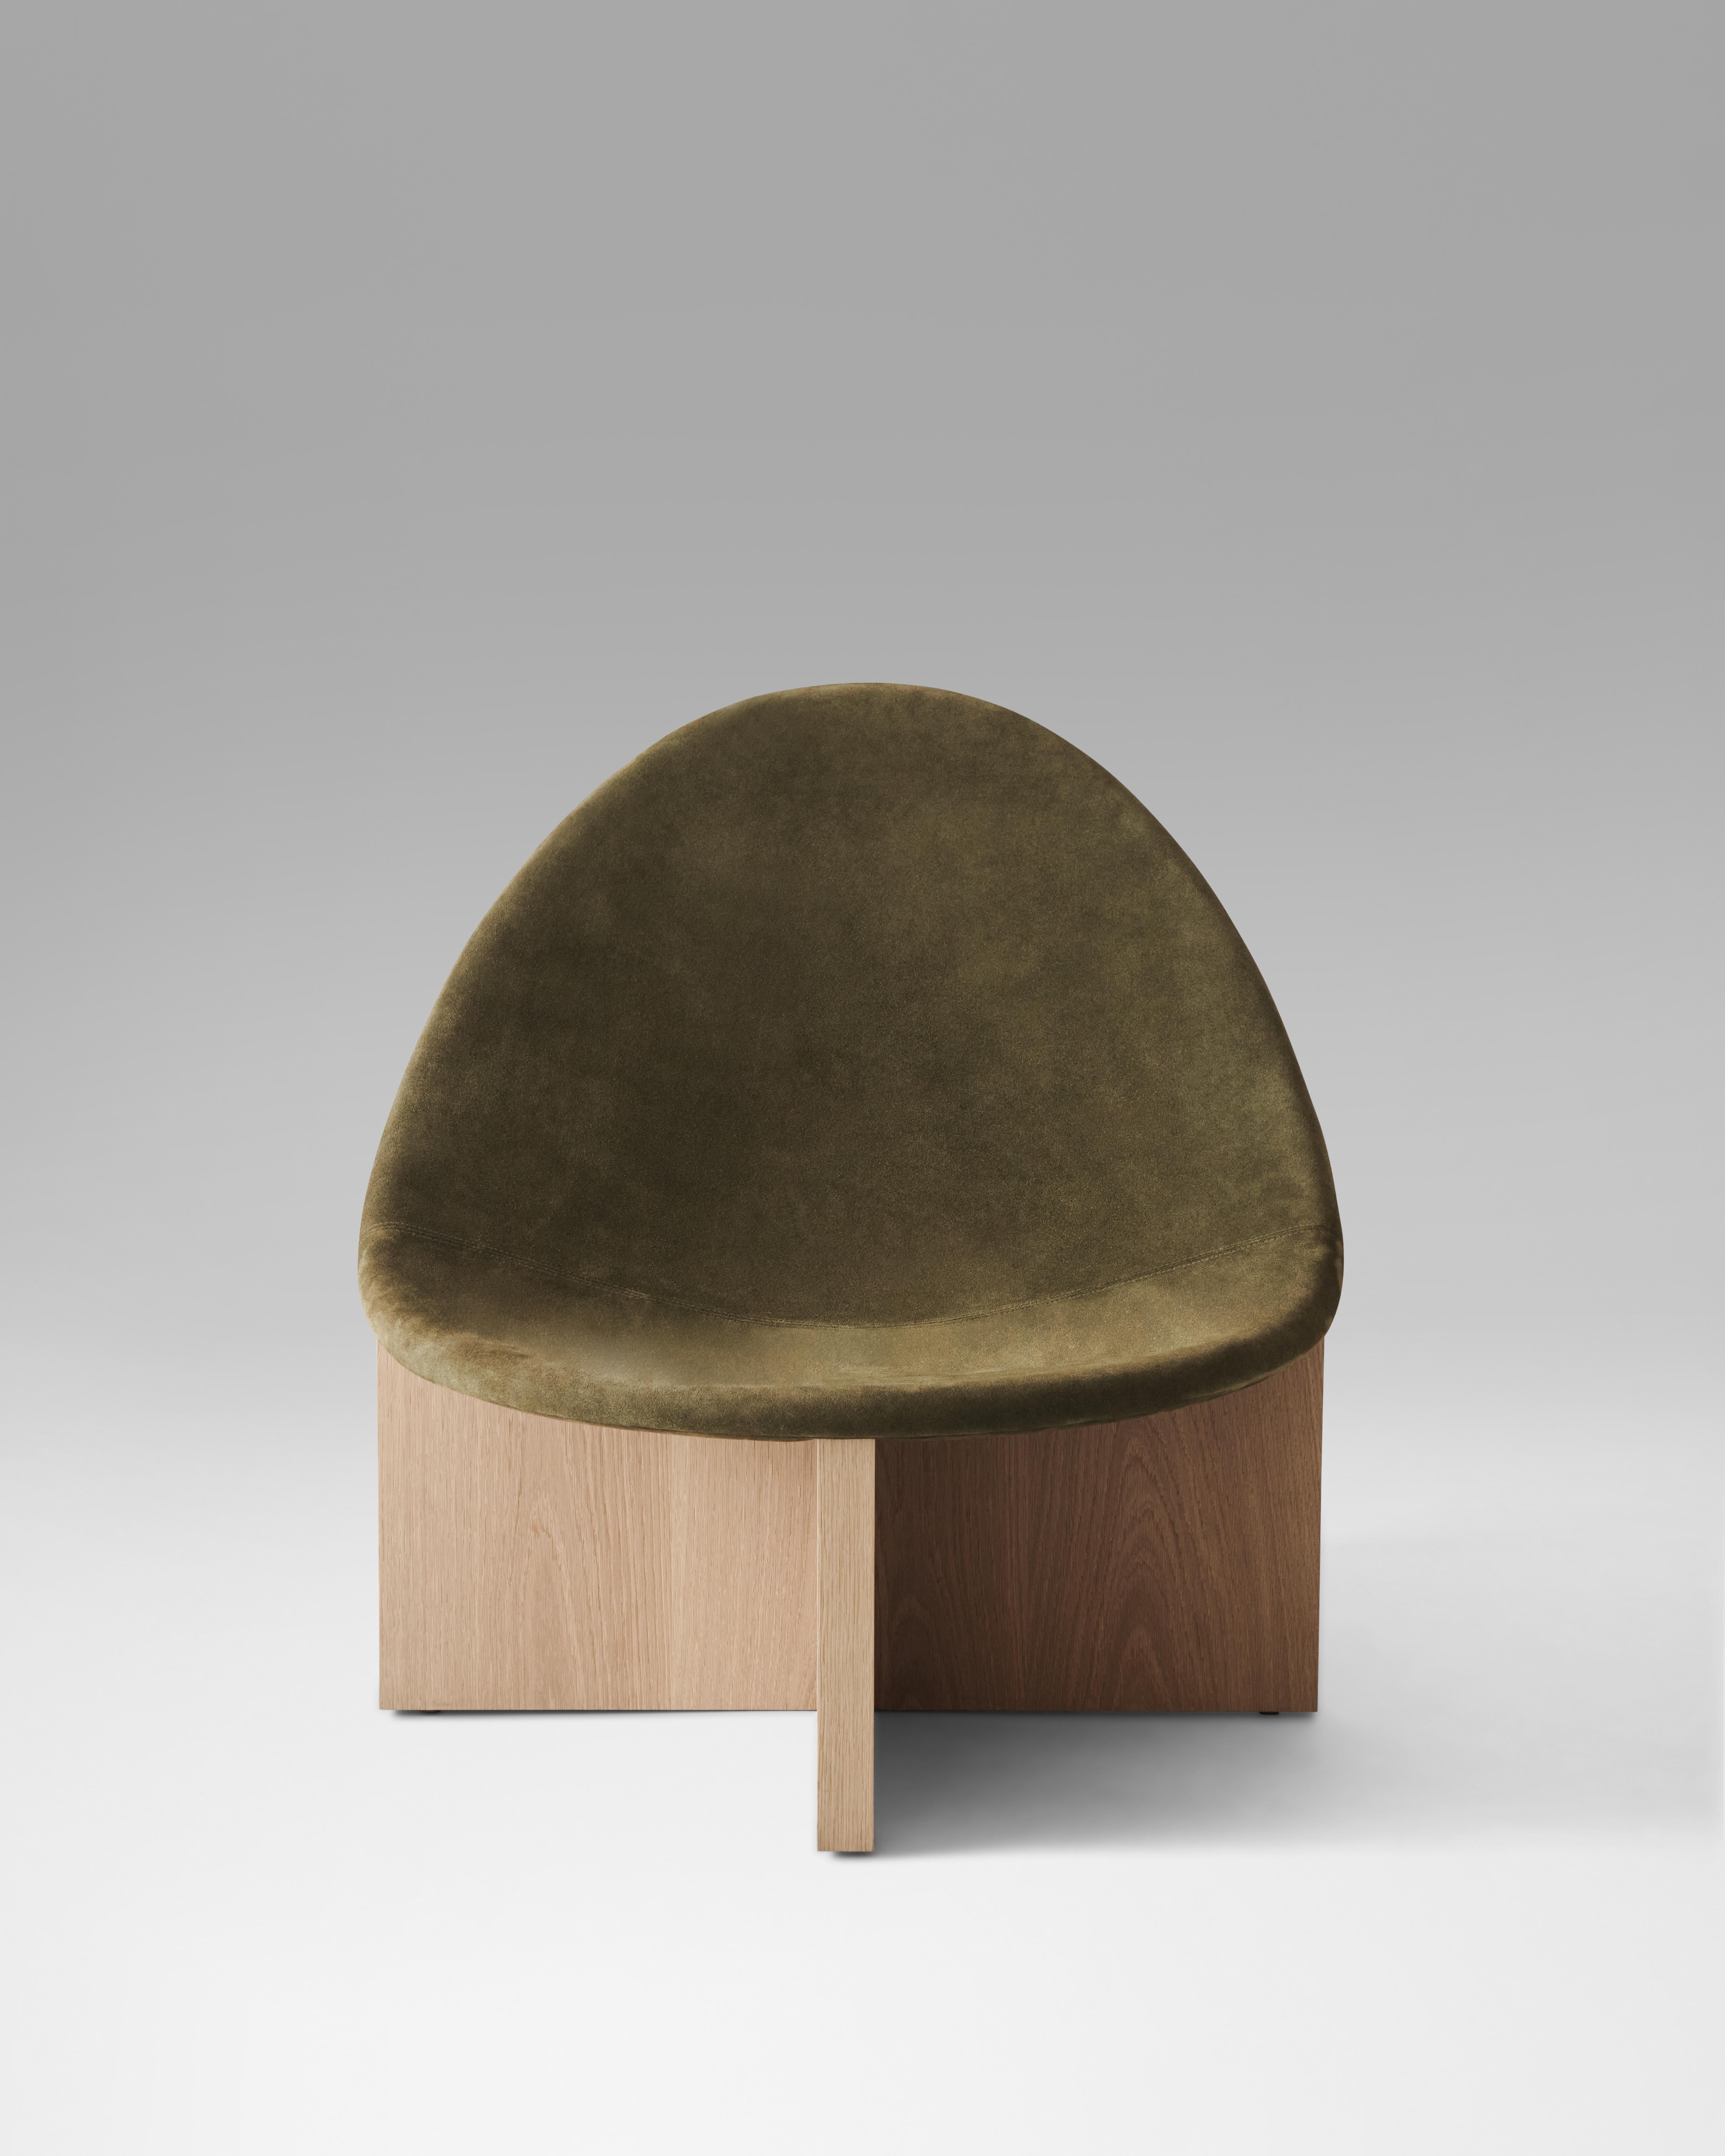 Der Stuhl NIDO ist das Ergebnis eines Spiels mit der Gegenüberstellung von Formen. Die eiförmige Form des ledergepolsterten Holzsitzes, der sich in den kreuzförmigen Massivholzrahmen einfügt, gibt ihm den Namen NIDO, was auf Spanisch Nest bedeutet.